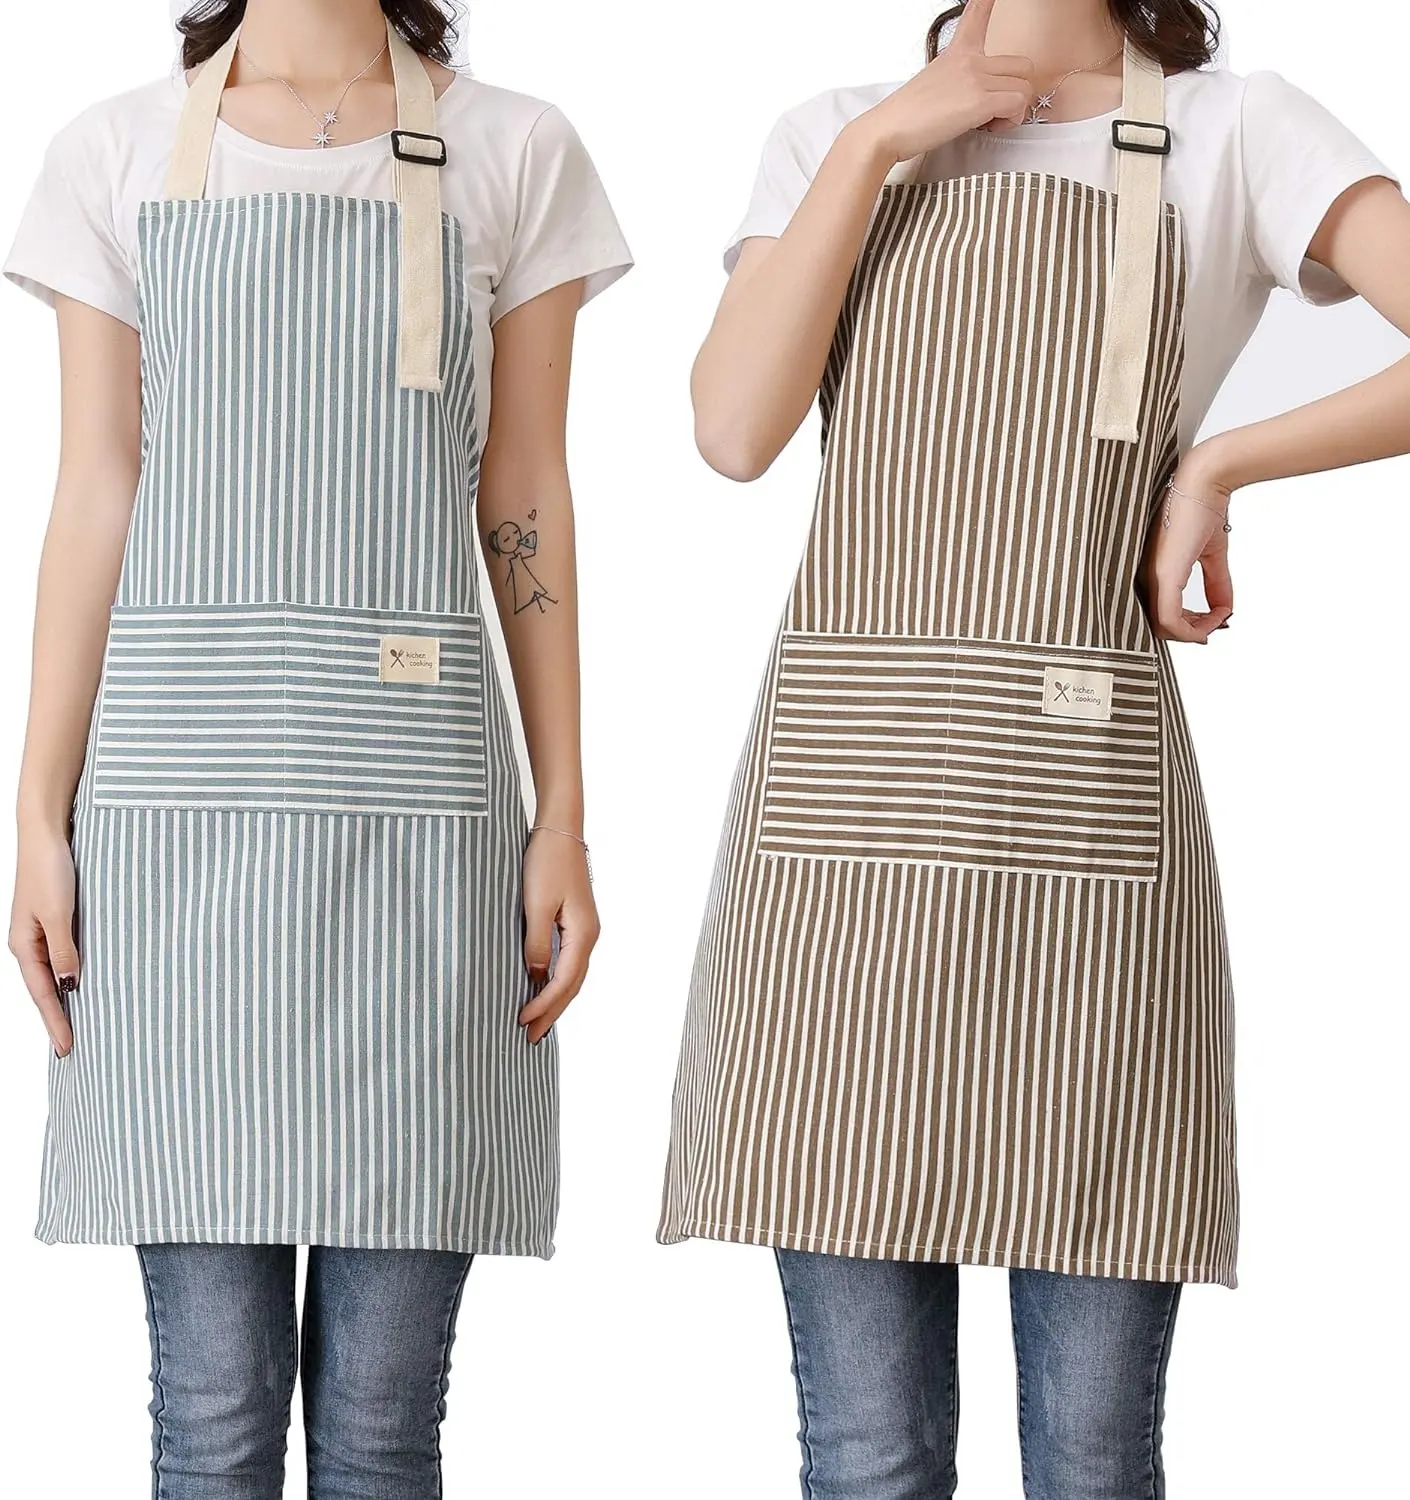 Novo design personalizado algodão linho cozinha servidor avental bib cozinhar impresso personalizado bordado logotipo chef listrado avental